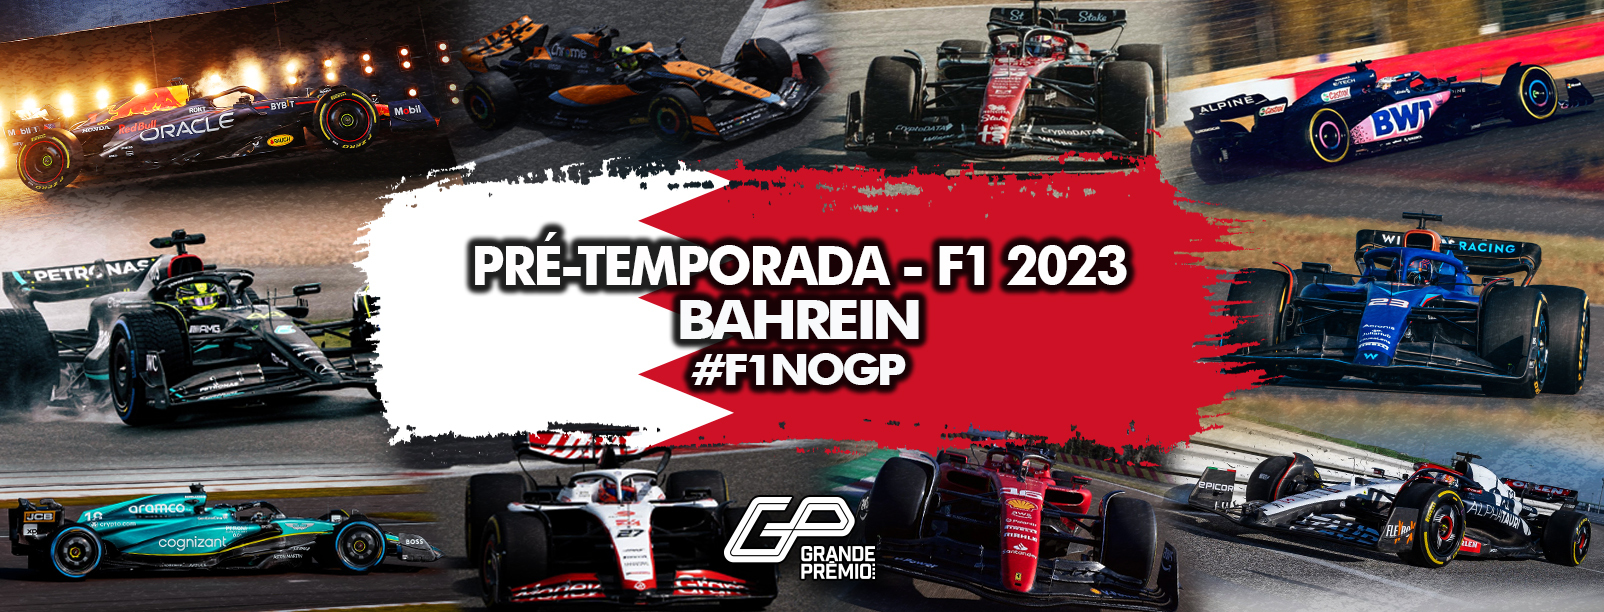 GP do Bahrein 2021: reveja o ao vivo do primeiro treino da F1 em